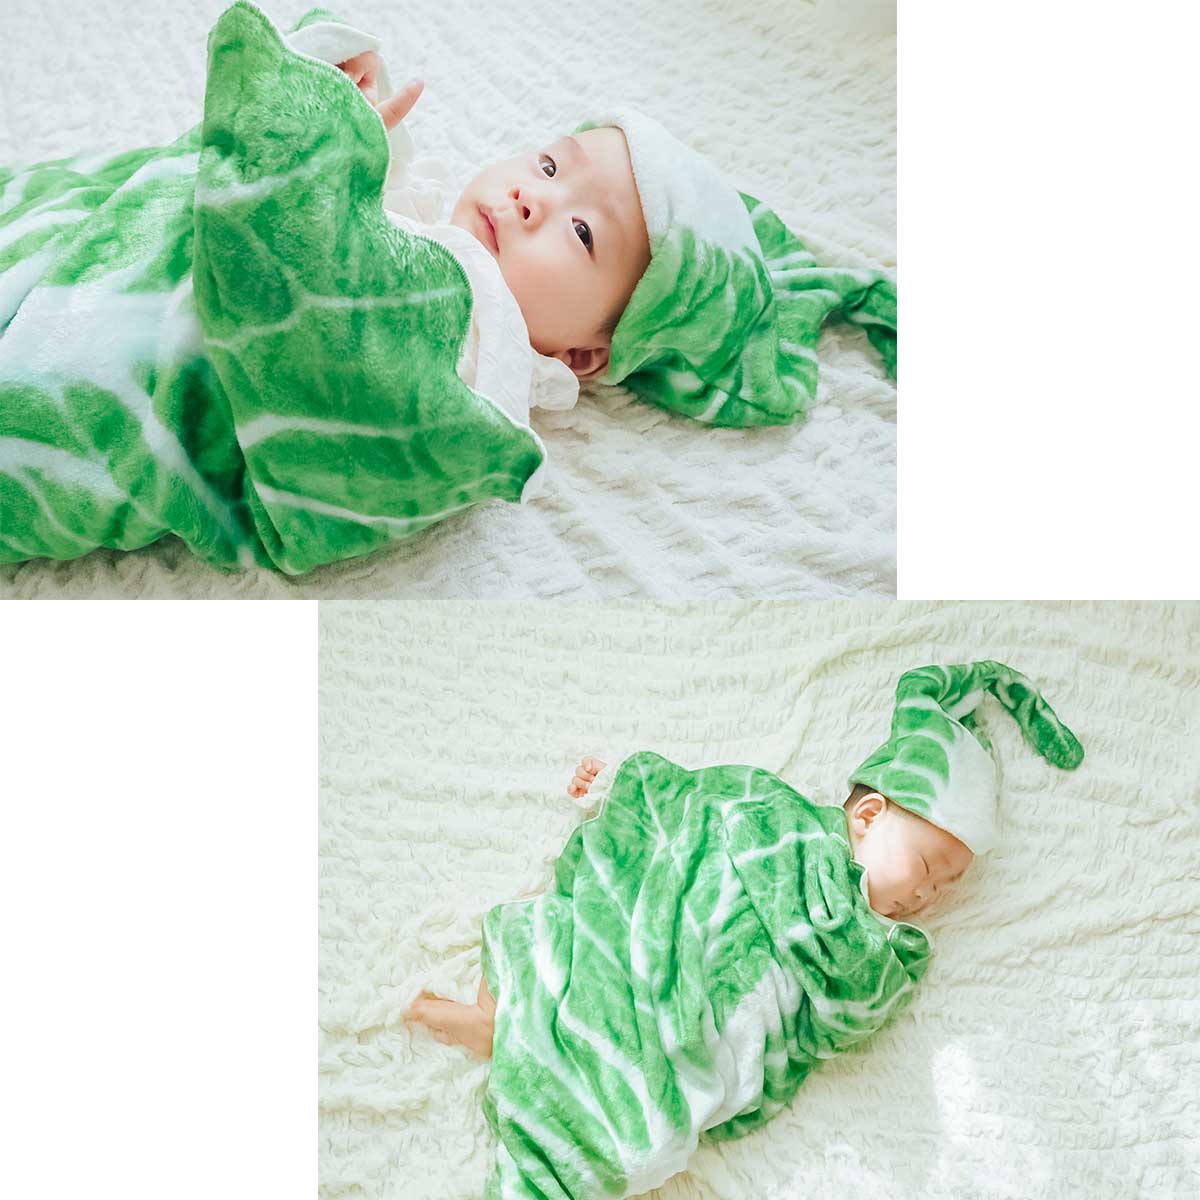  одеяло китайская капуста поверхность белый baby покрывало овощи младенец .. искусство новорожденный . днем . искусство новый bo-n фото одеяло празднование рождения подарок шляпа есть 